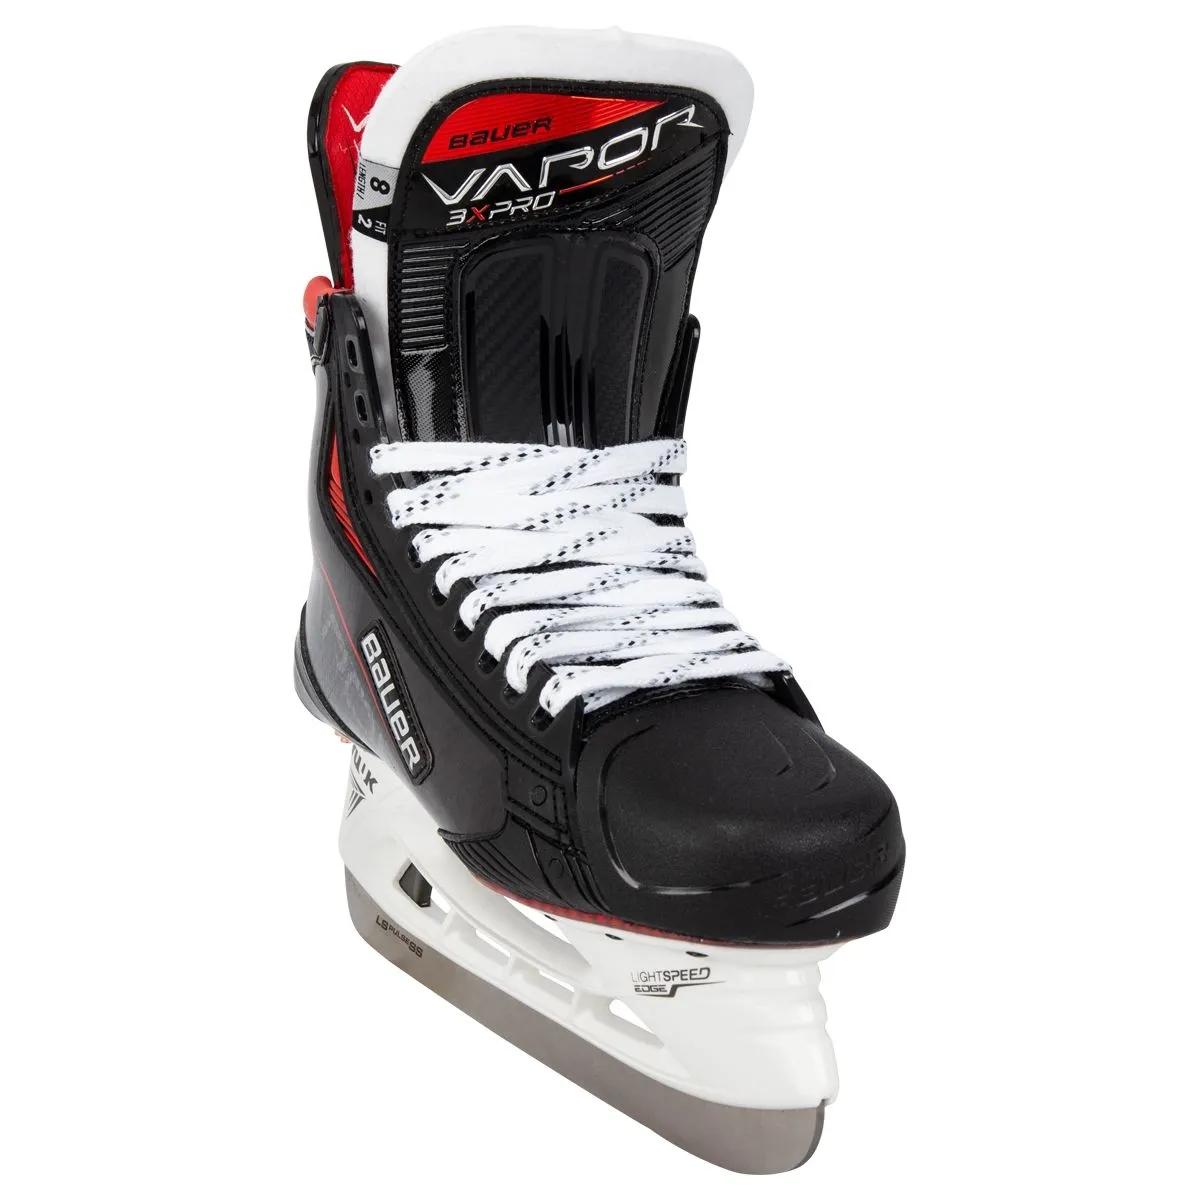 Bauer Vapor 3X Pro Int. Hockey Skatesproduct zoom image #2